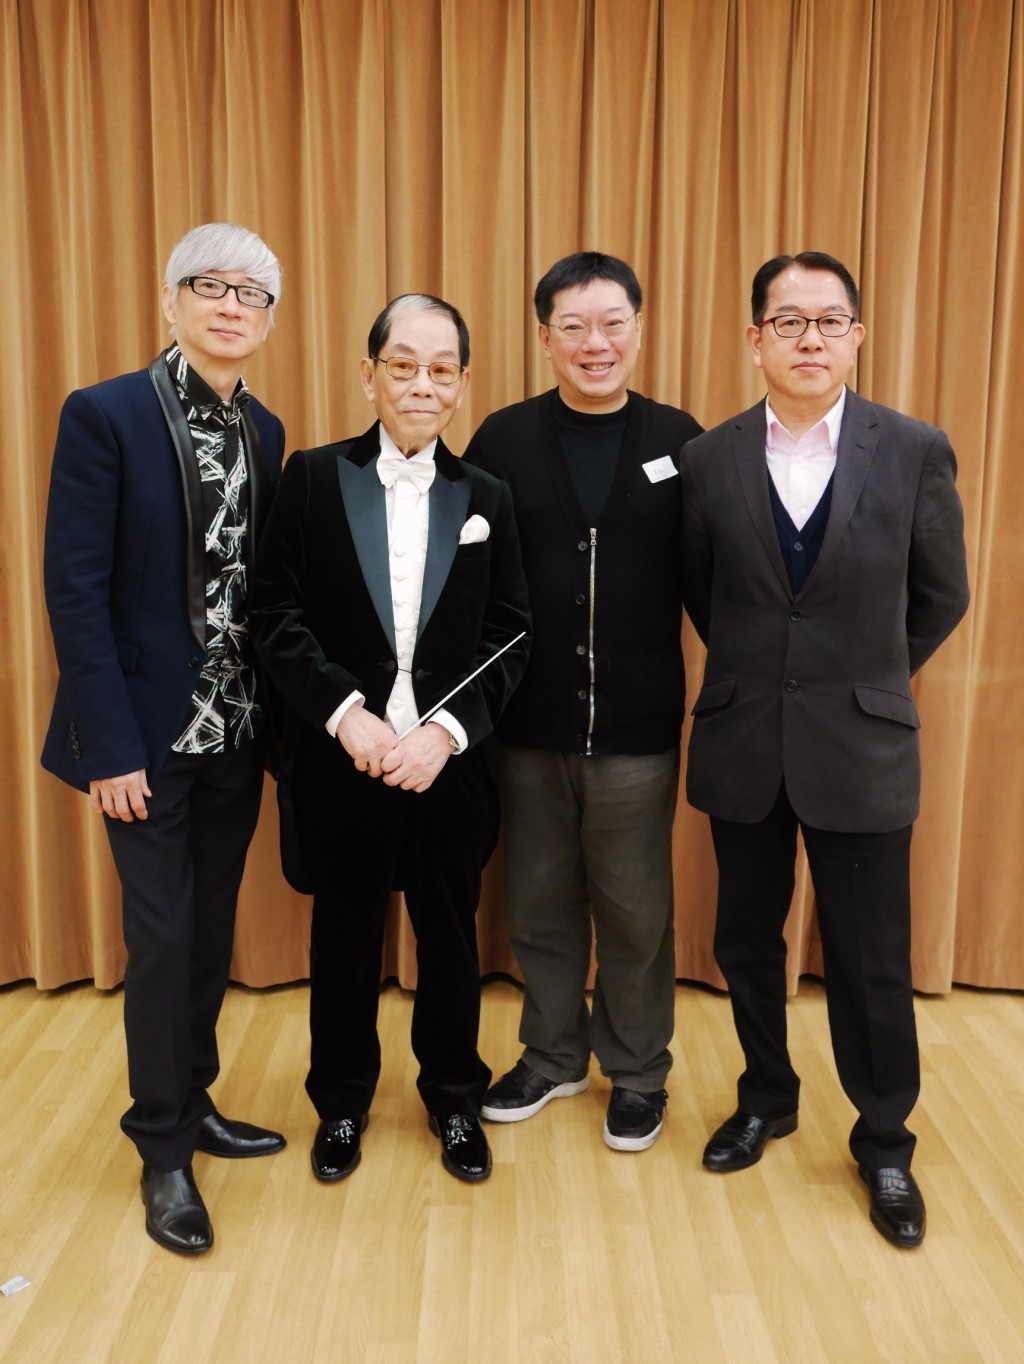 2015年「乐坛教父」顾嘉辉(左2)与徒弟徐日勤(左1)、著名 设计师陈华国(右2)、丘亚葵(右1)合照。